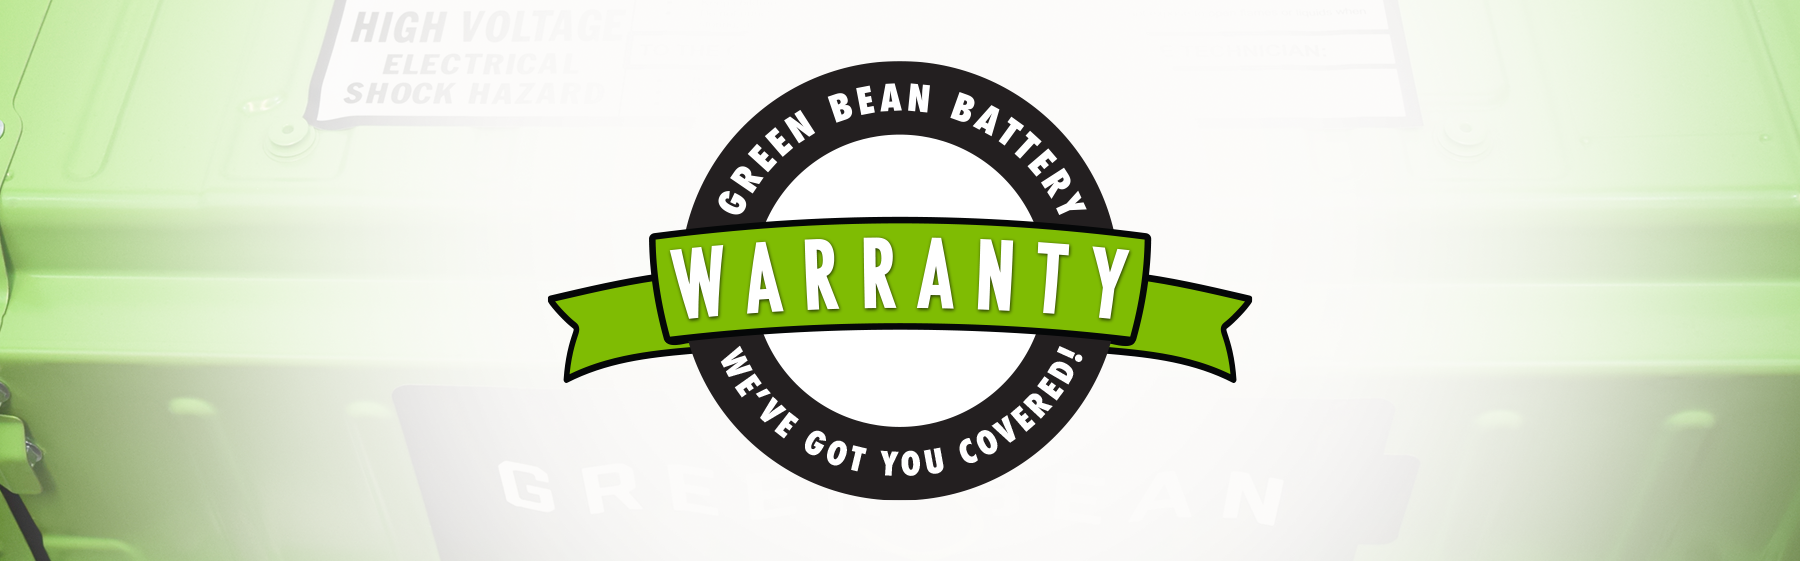 Green Bean Battery Lifetime Warranty